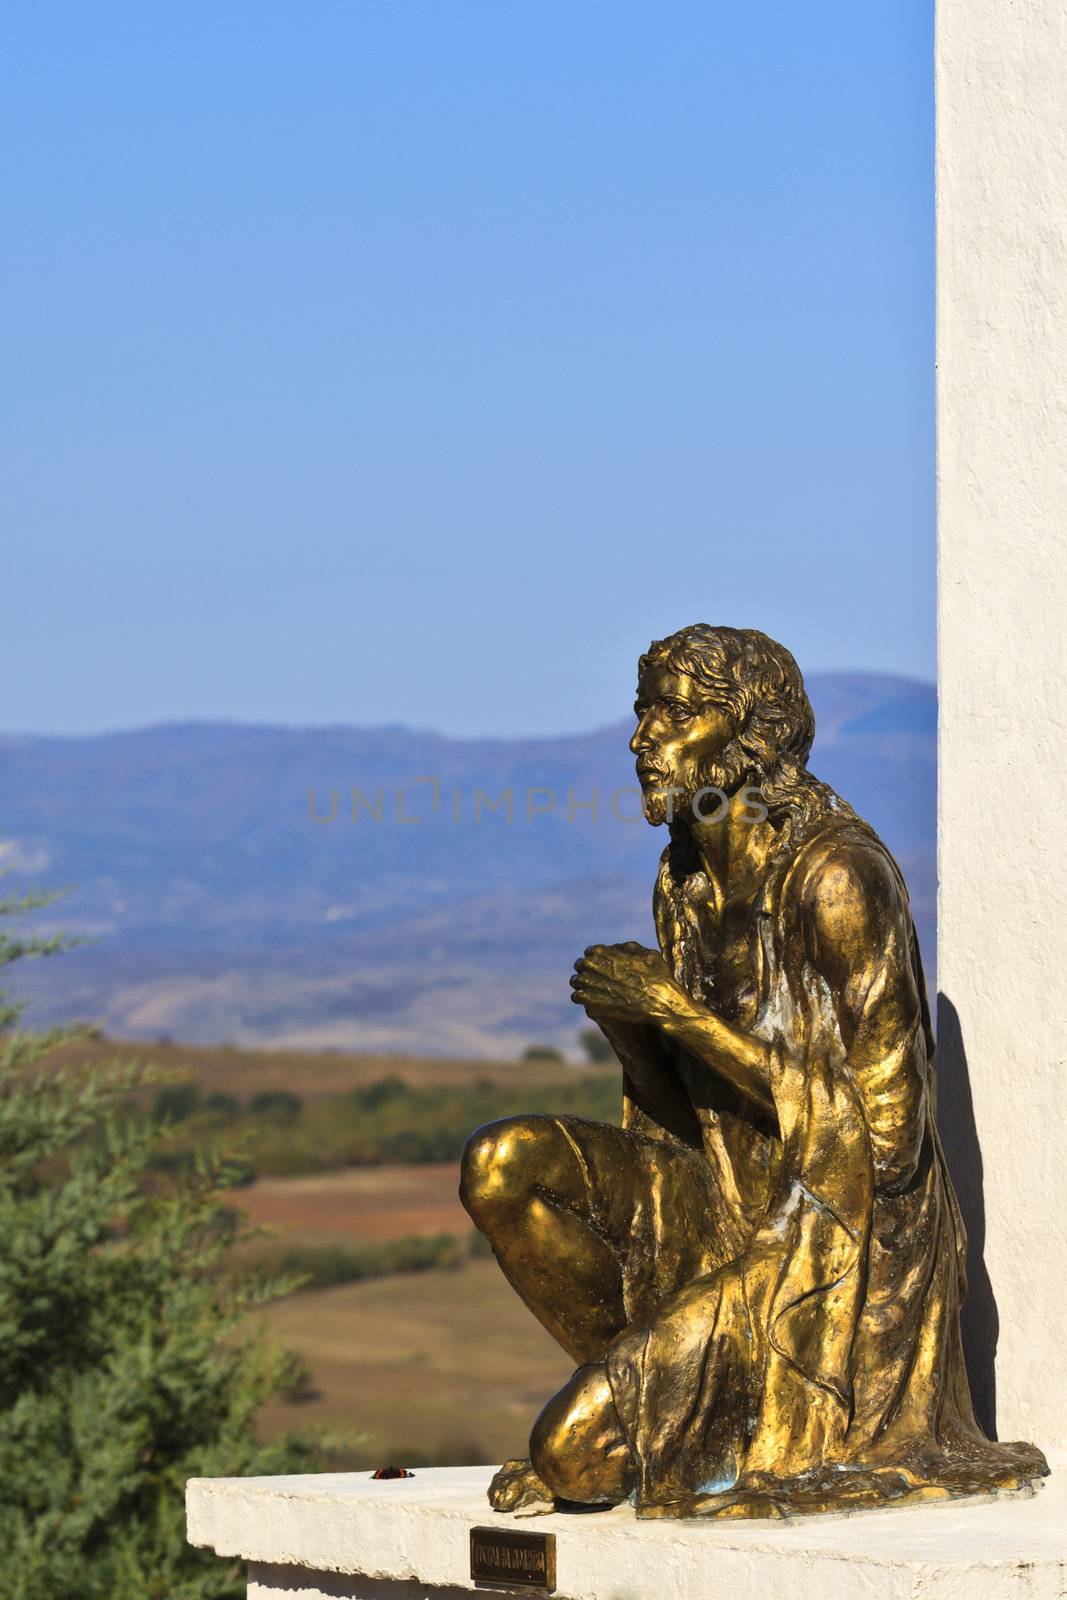 Statue of Jesus Christ praying, in Orthodox church in Macedonia